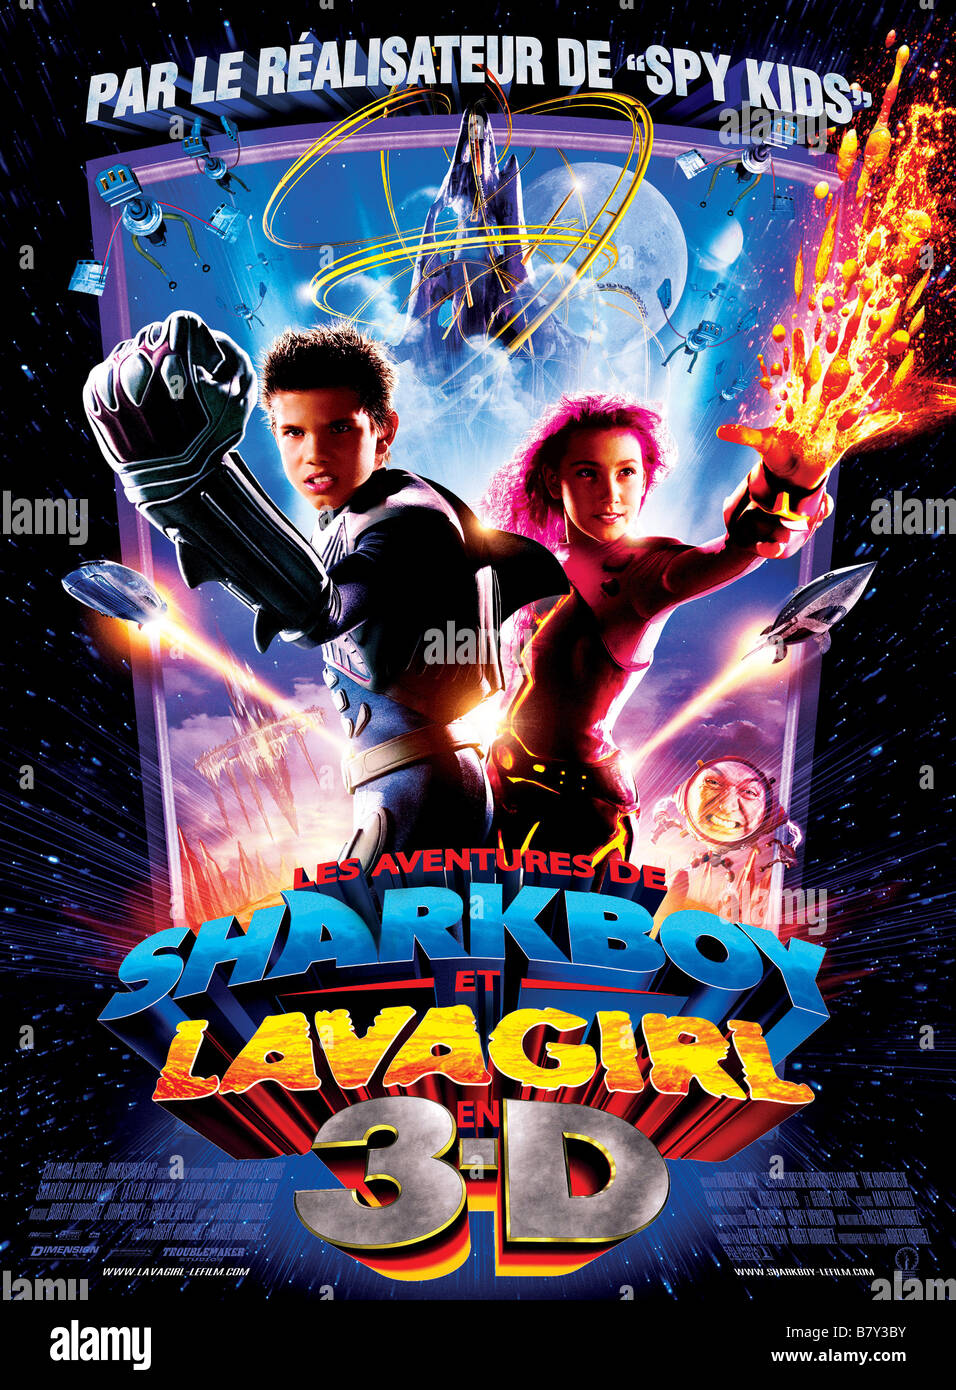 Les aventures de Sharkboy et Lavagirl en 3-D Les Aventures de Sharkboy et Lavagirl en 3-D Année : 2005 USA Taylor Lautner, Taylor Dooley, affiche poster Réalisateur : Robert Rodriguez Banque D'Images